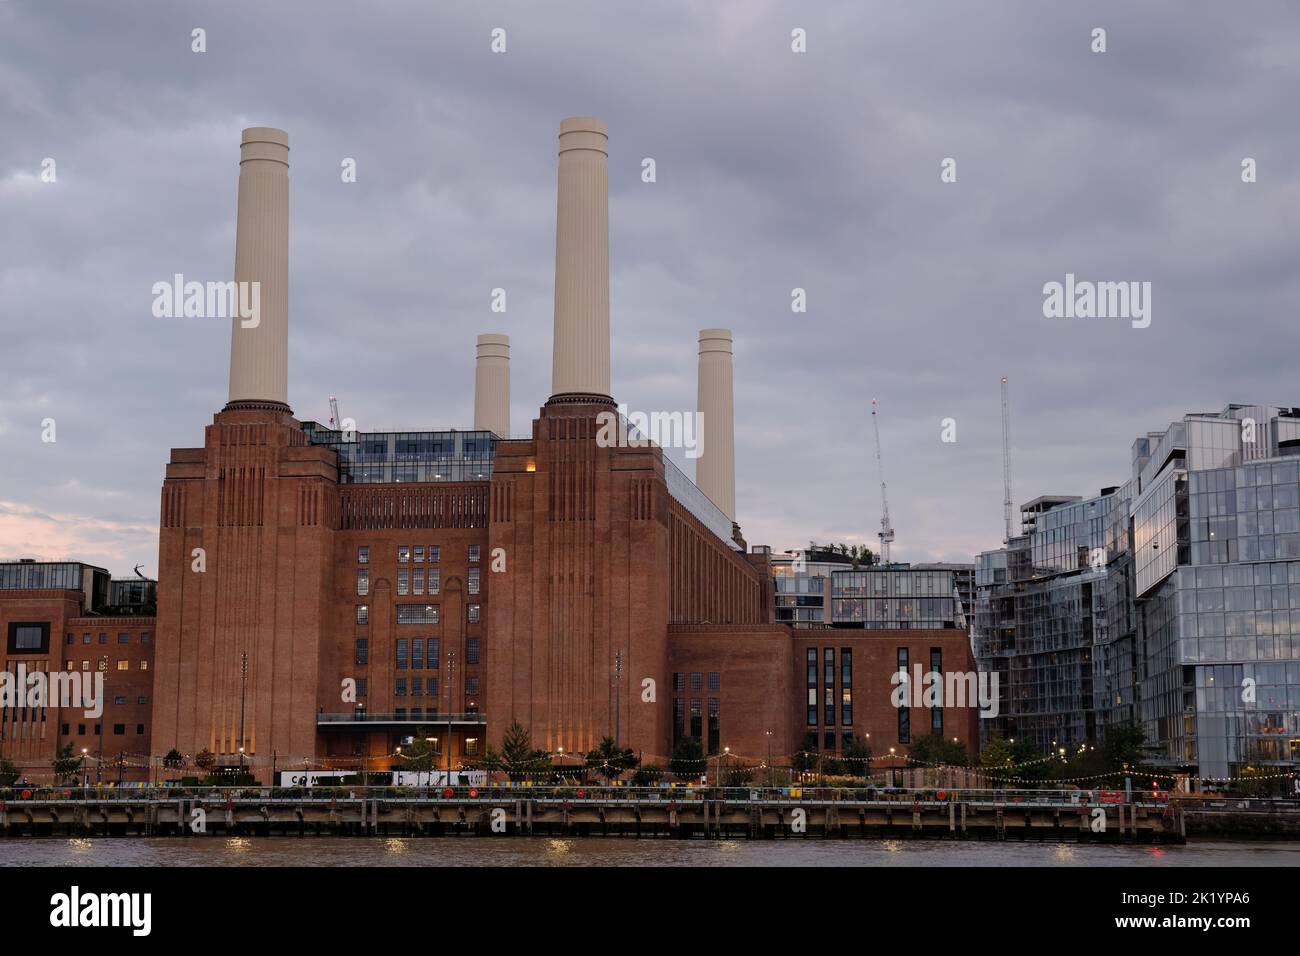 Vue sur la centrale électrique de Battersea depuis le côté nord de la Tamise à Londres au crépuscule Banque D'Images